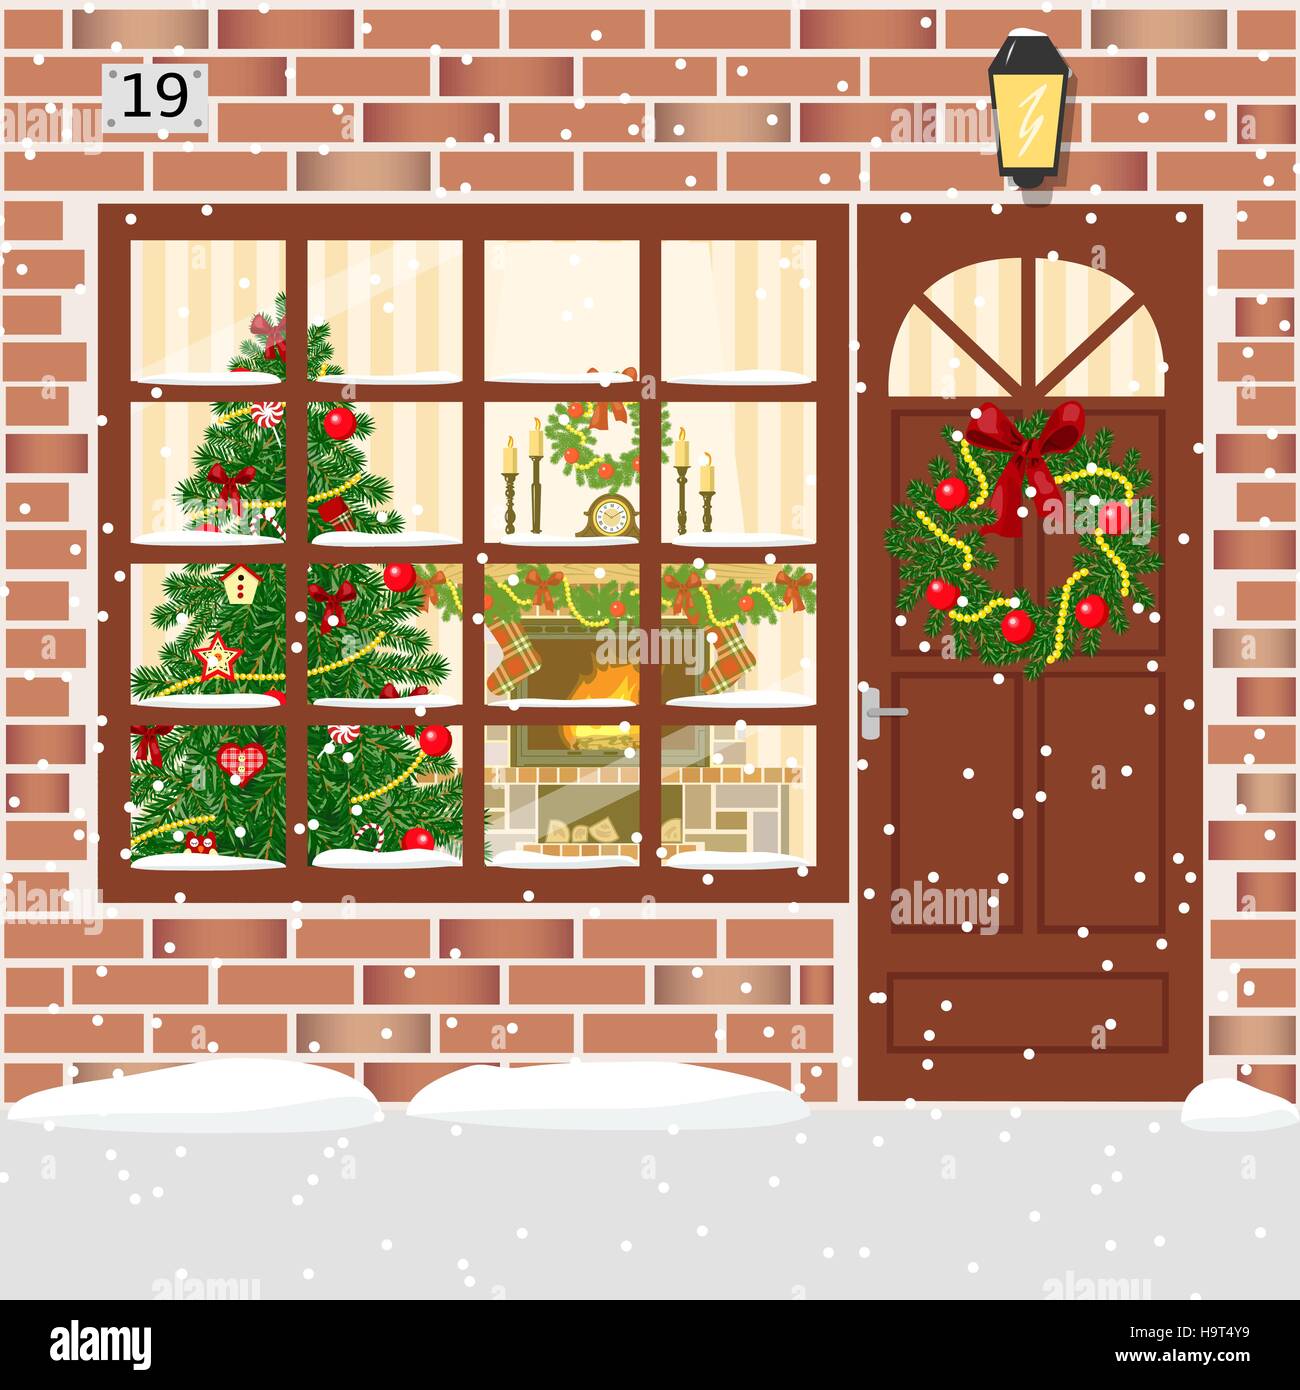 Décoration de Noël porte, house entrée avec guirlande. Allumé la façade de l'immeuble de briques rouges avec porte, fenêtre, Garland, arbre de Noël, des flocons de neige, sapin Illustration de Vecteur